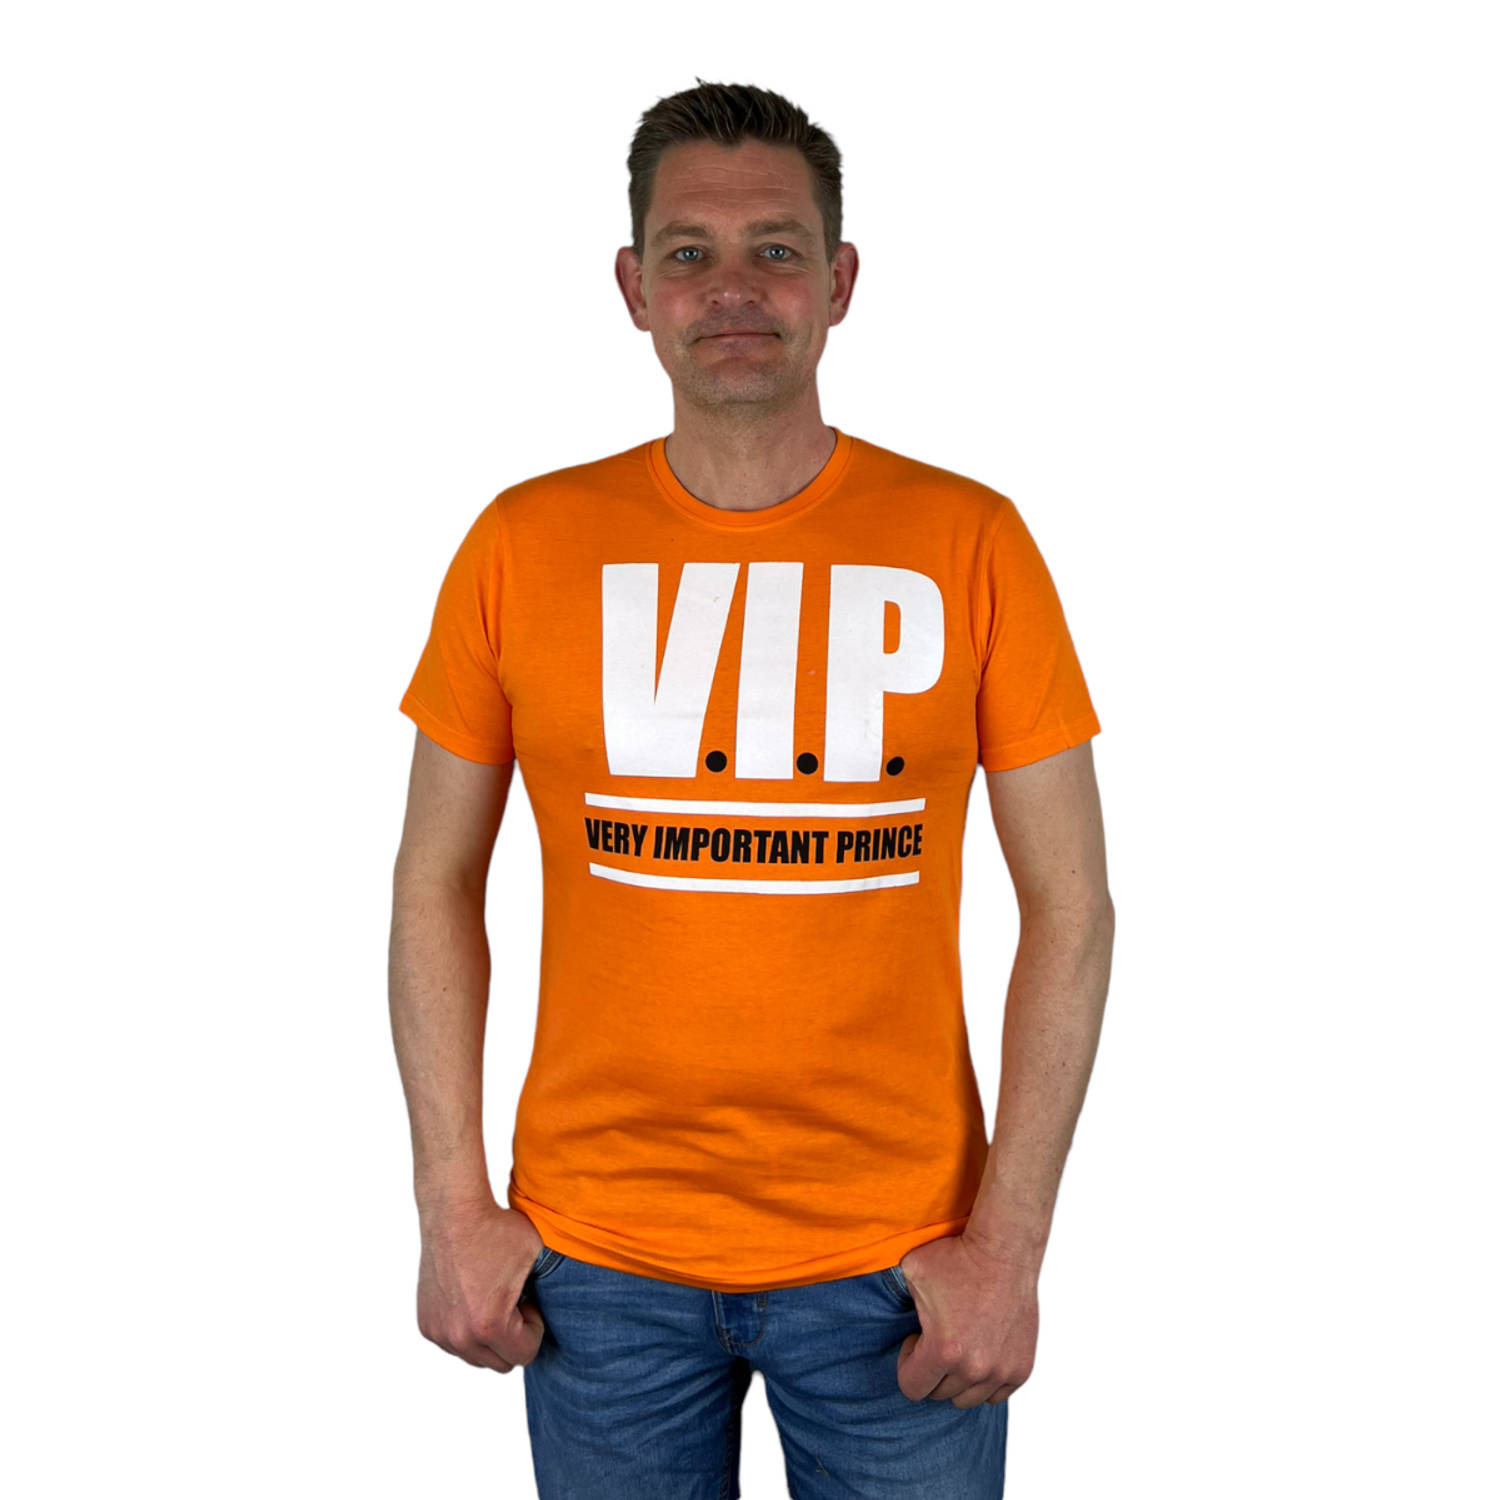 Oranje Heren T-Shirt - V.I.P. Very Important Prince - Voor Koningsdag - Holland - Formule 1 - EK/WK Voetbal - Maat XL